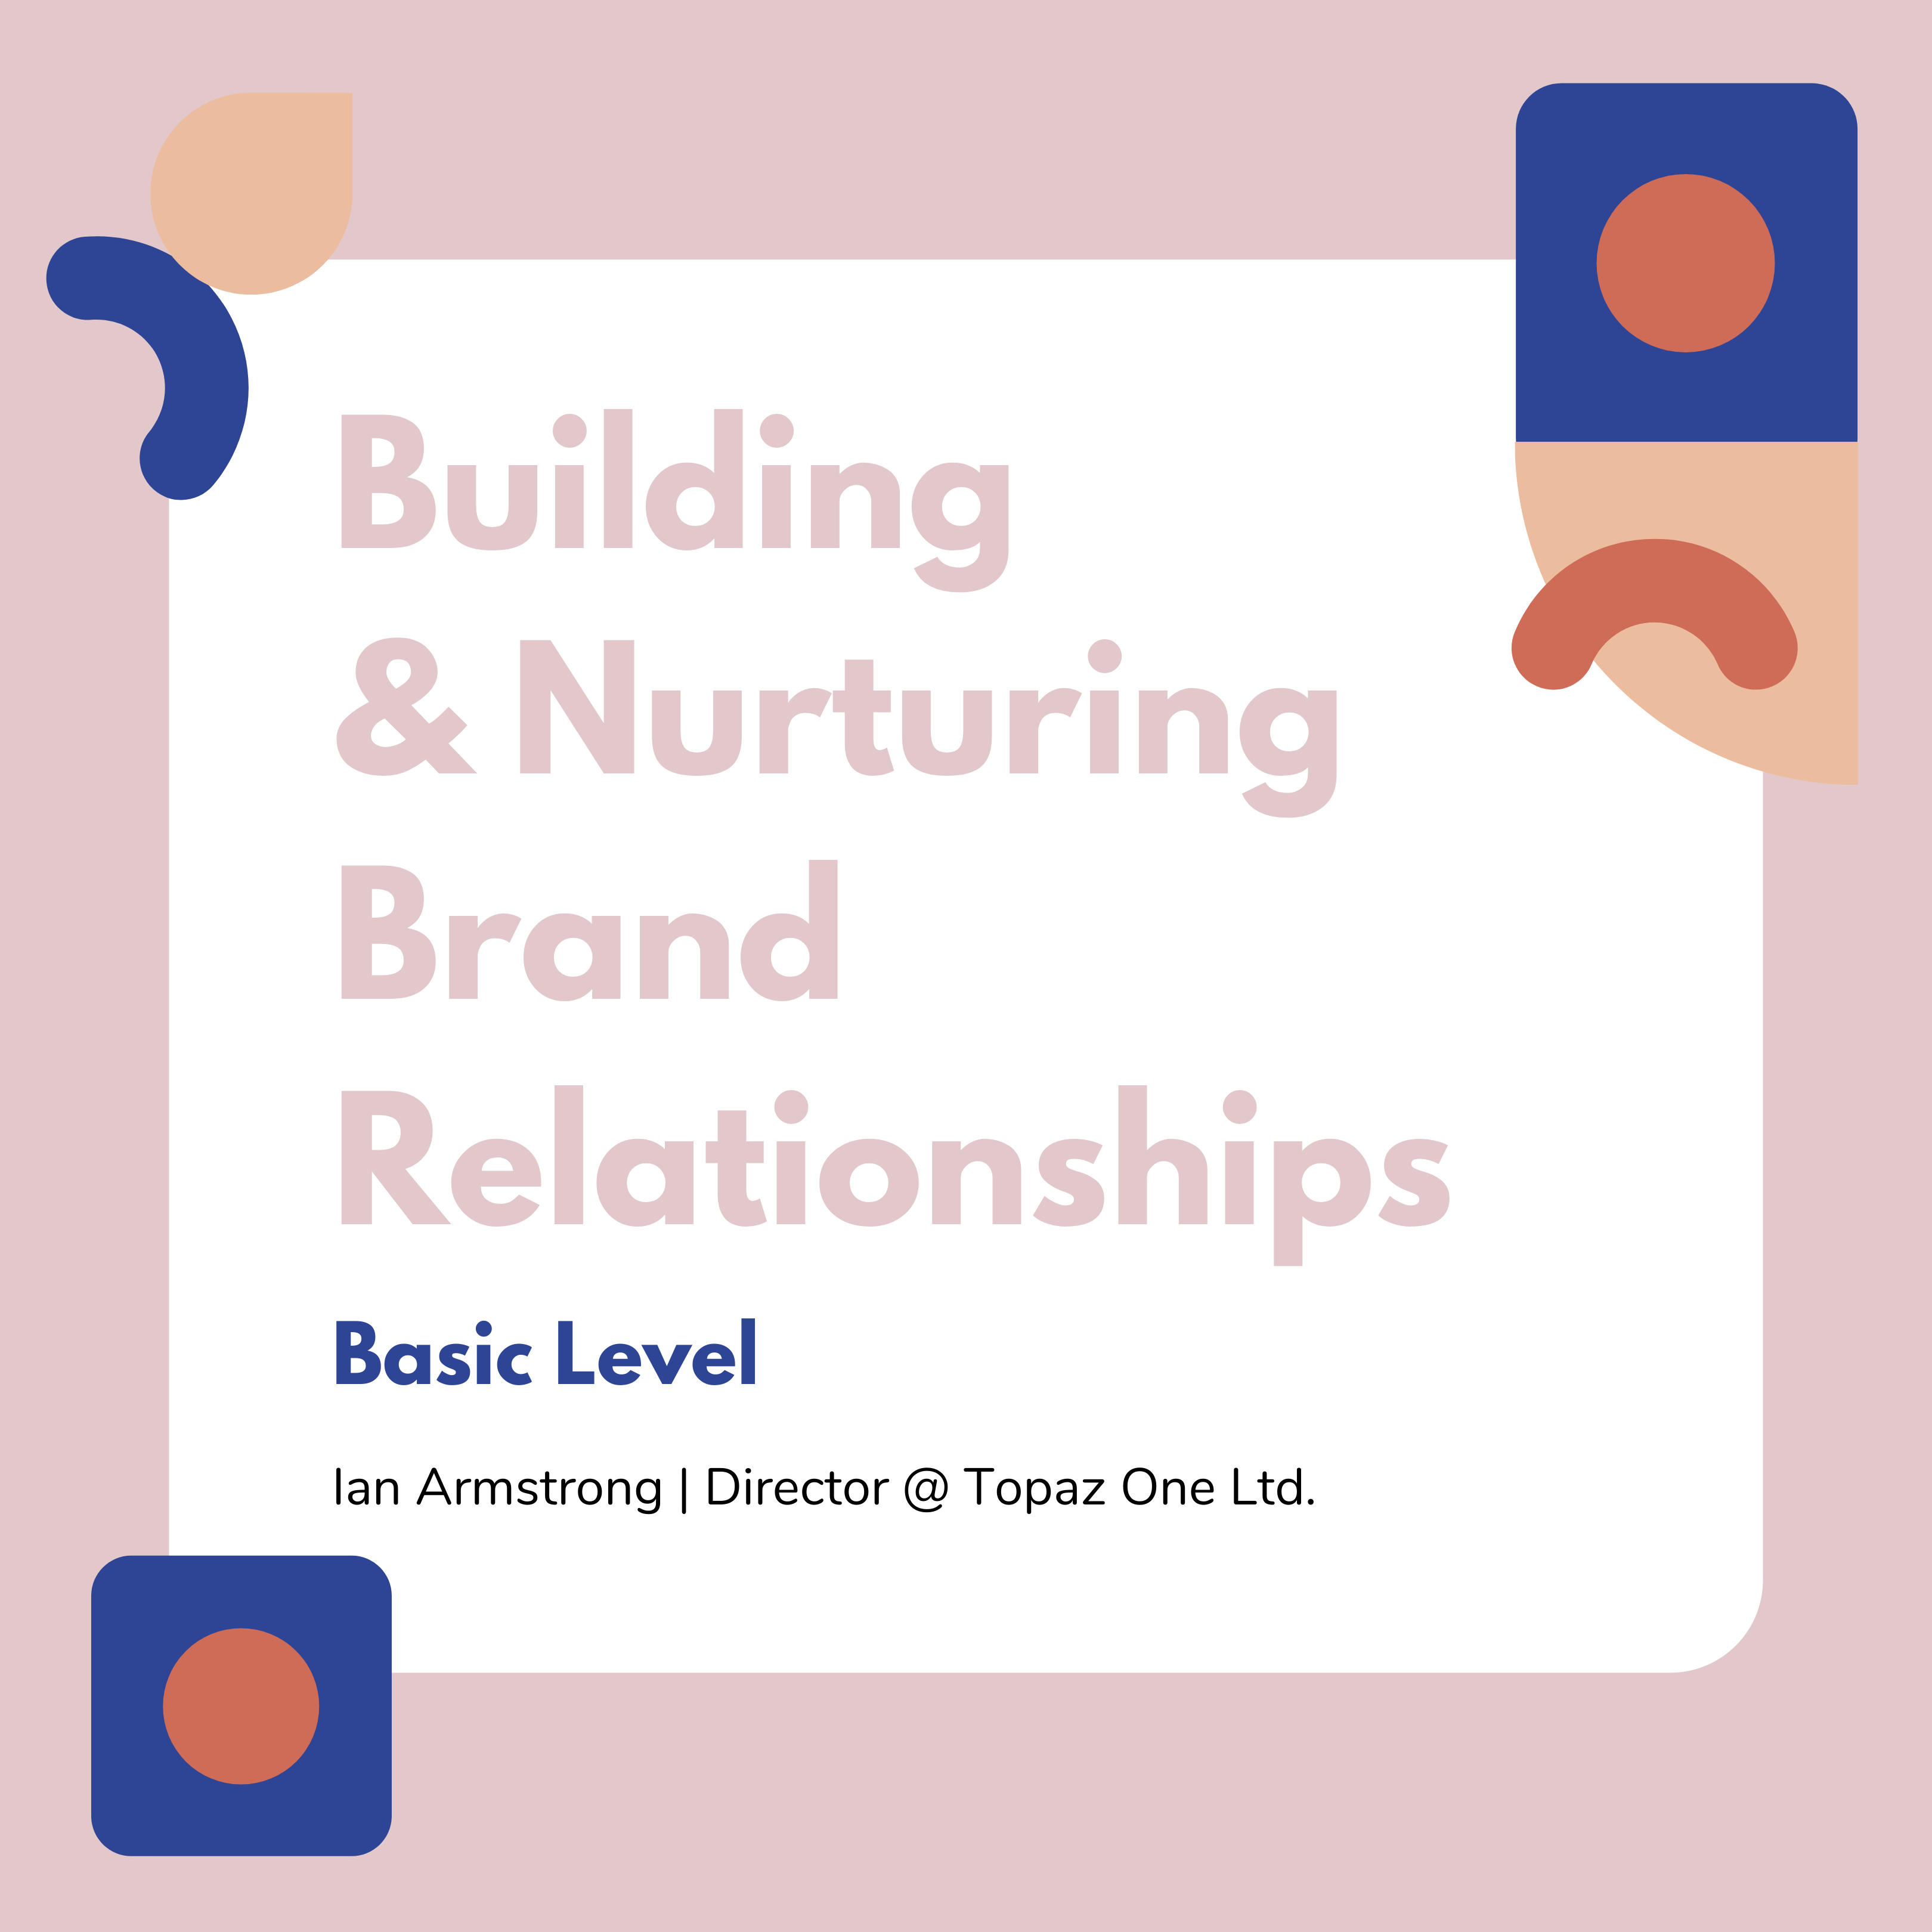 Building & Nurturing Brand Relationships